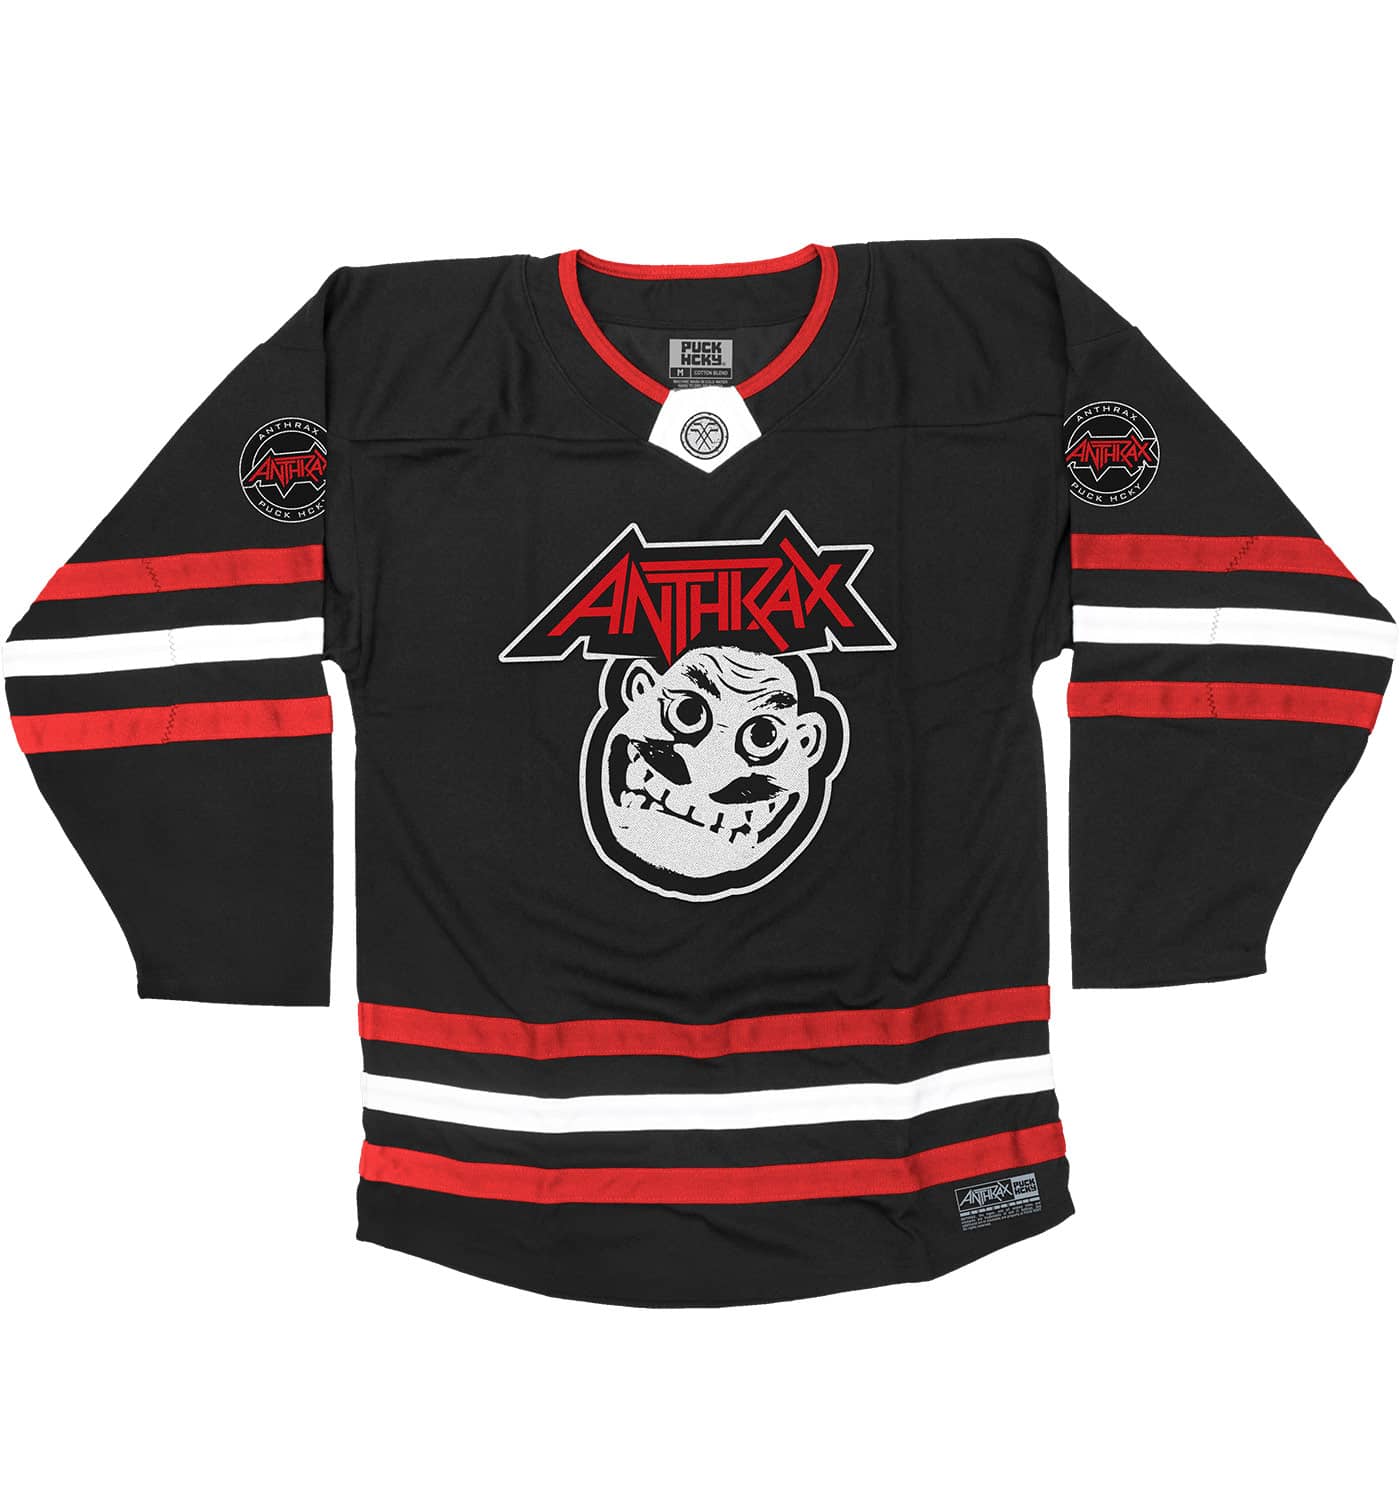 100% Polyester Quick Dry Fabric Funny Hockey Jerseys Ice Hockey Wear